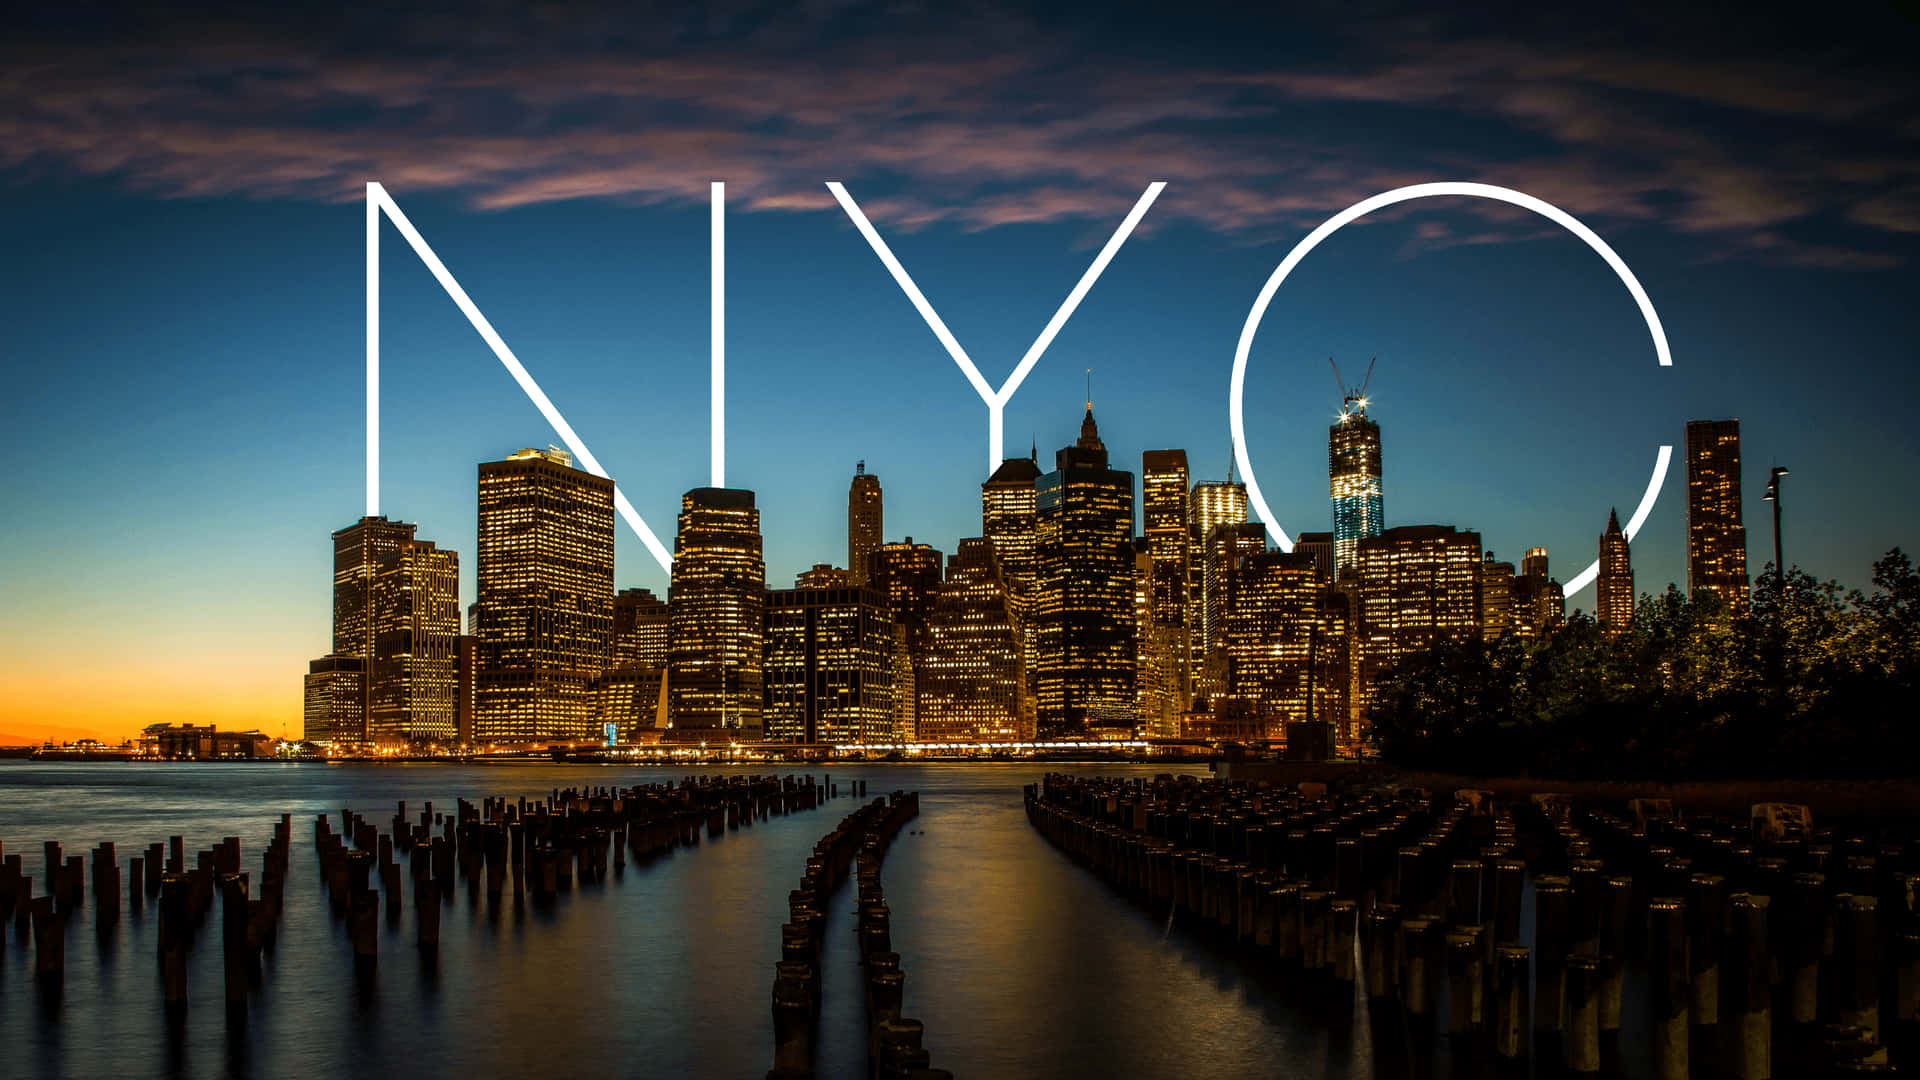 Nyttbakgrundsbild Av New York City.